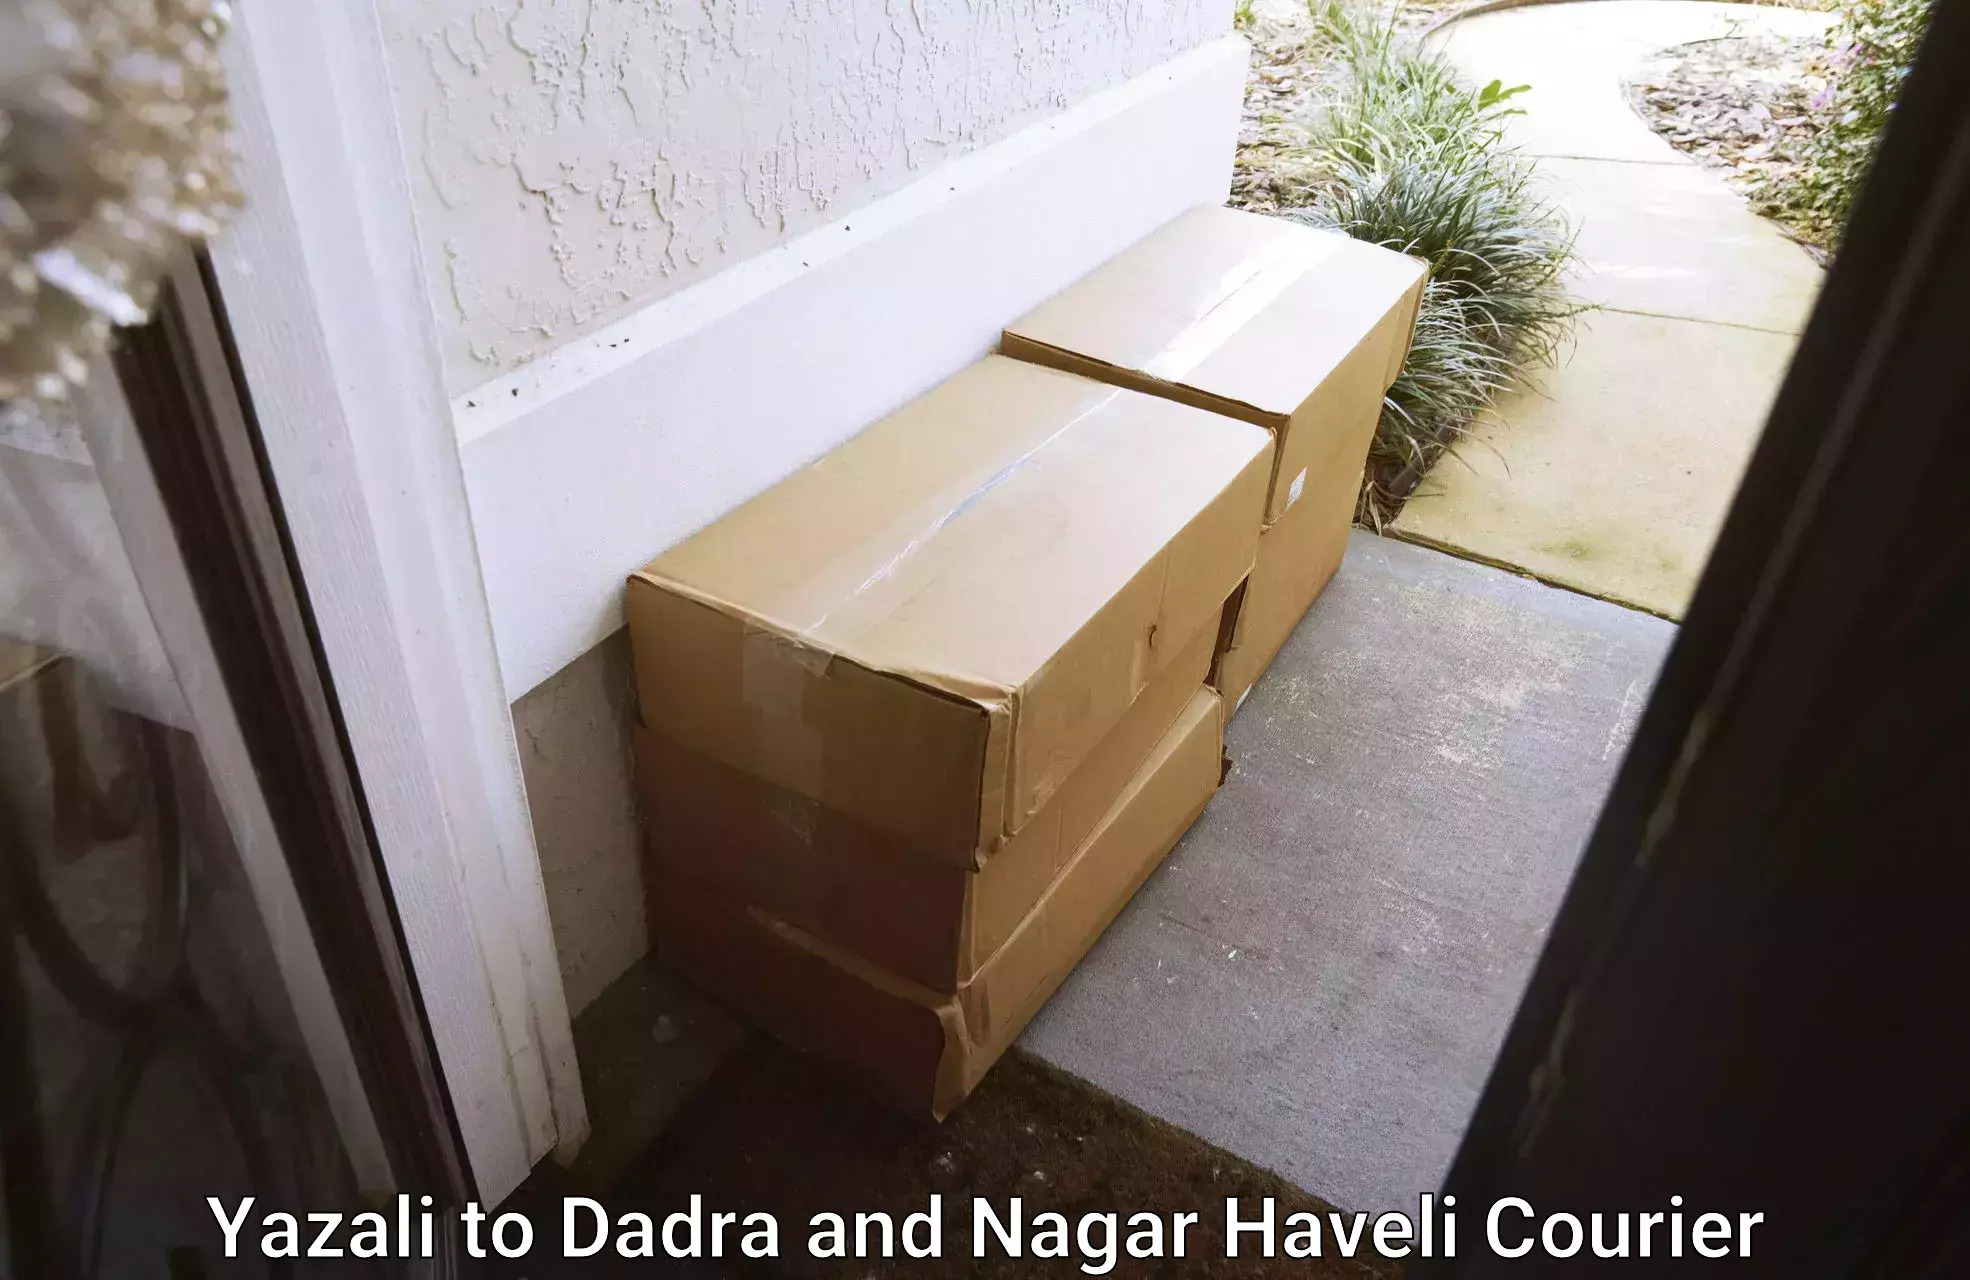 Express courier capabilities Yazali to Dadra and Nagar Haveli